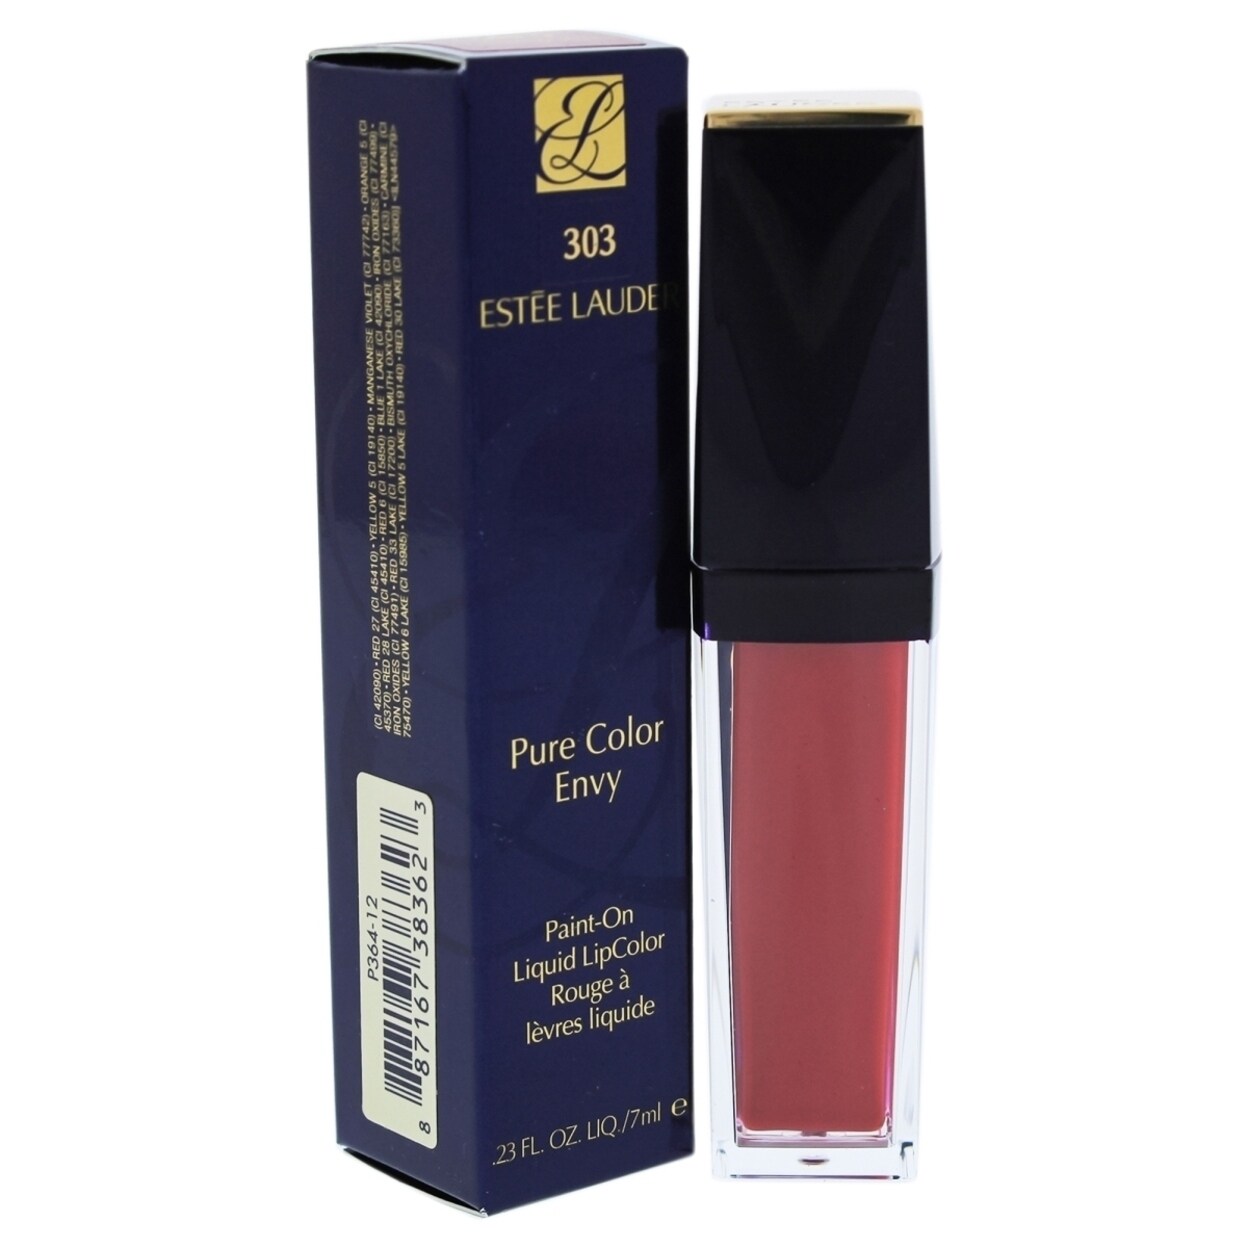 Estee Lauder I0086334 0 23 Oz Pure Color Envy Paint-On Liquid Lip Color For Womens - 303 Controversial